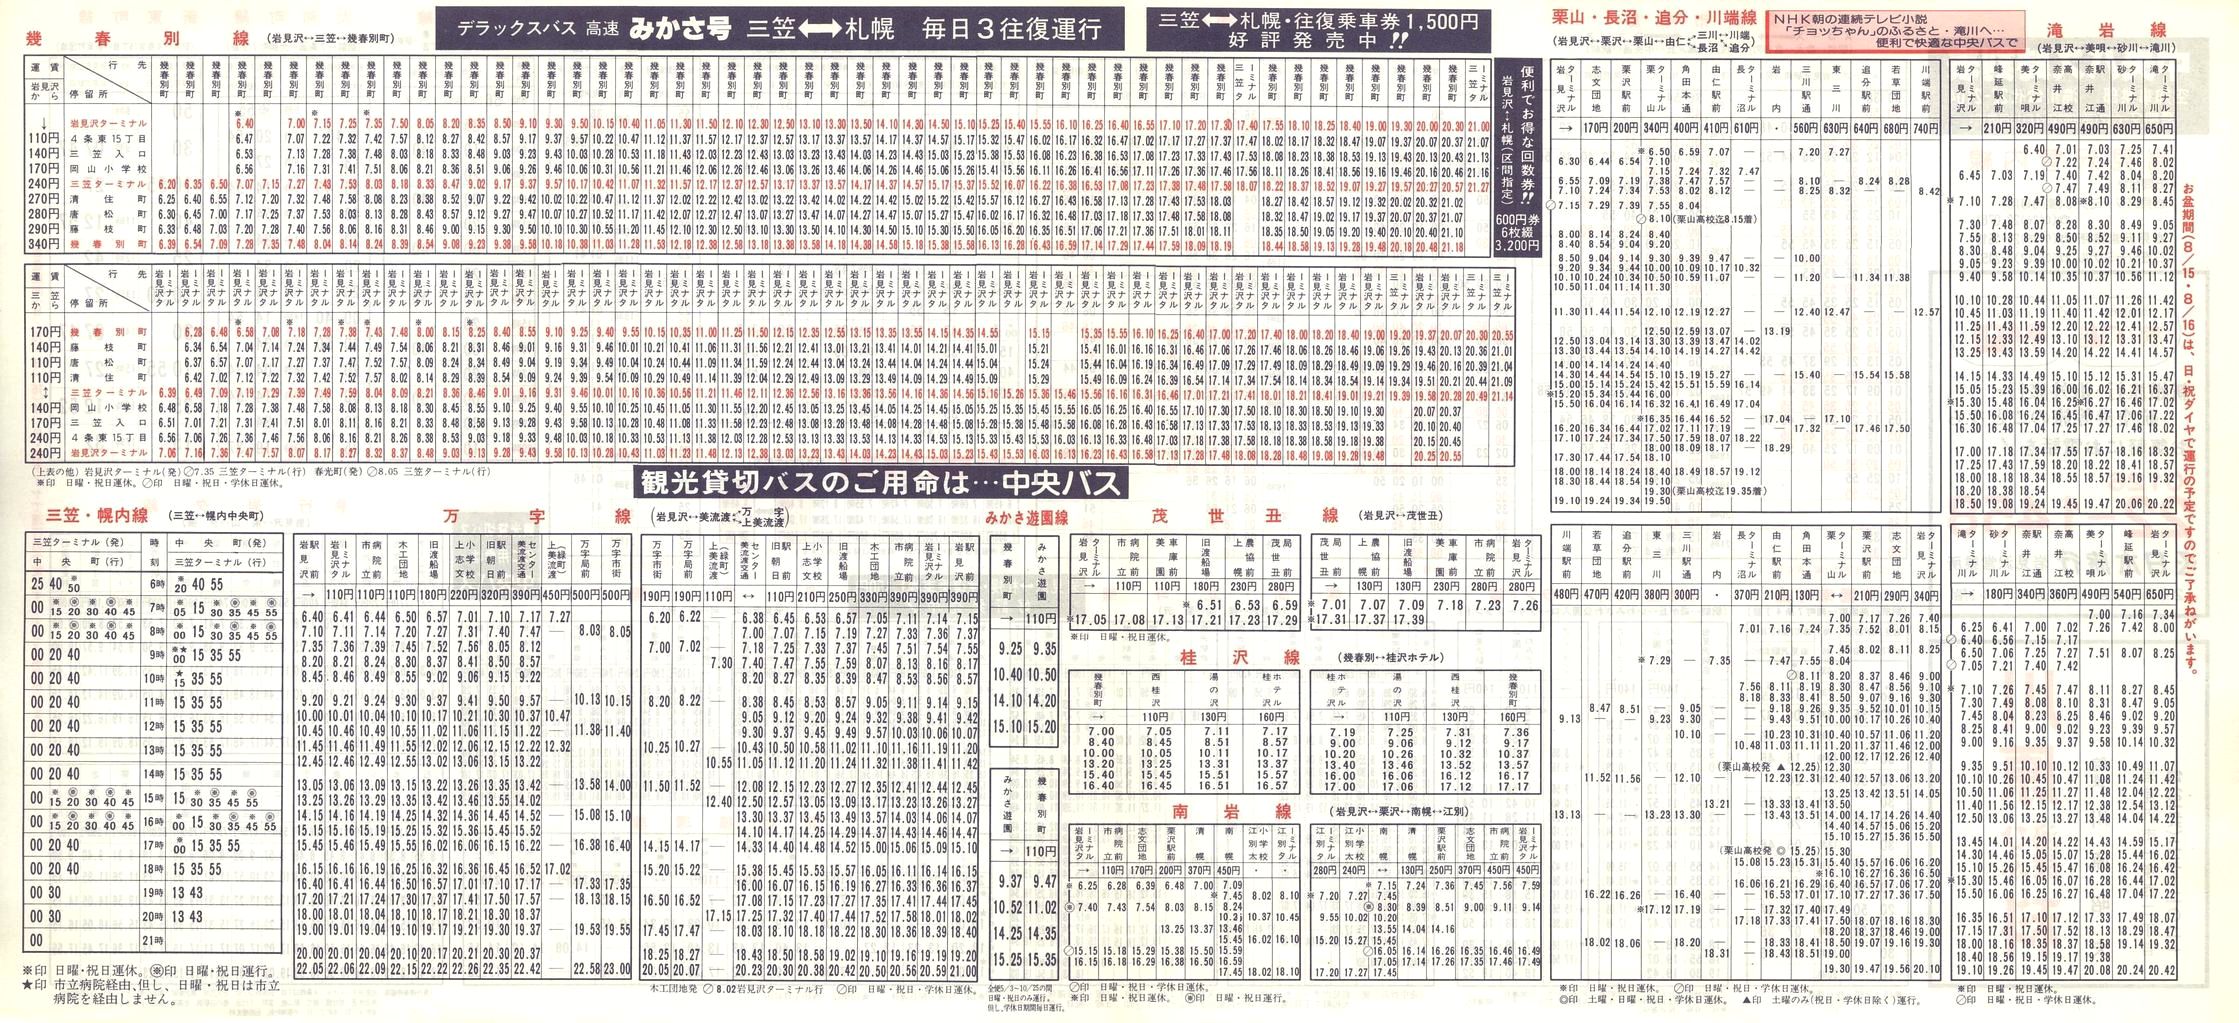 1987-04-10改正_北海道中央バス(空知)_岩見沢管内線時刻表裏面